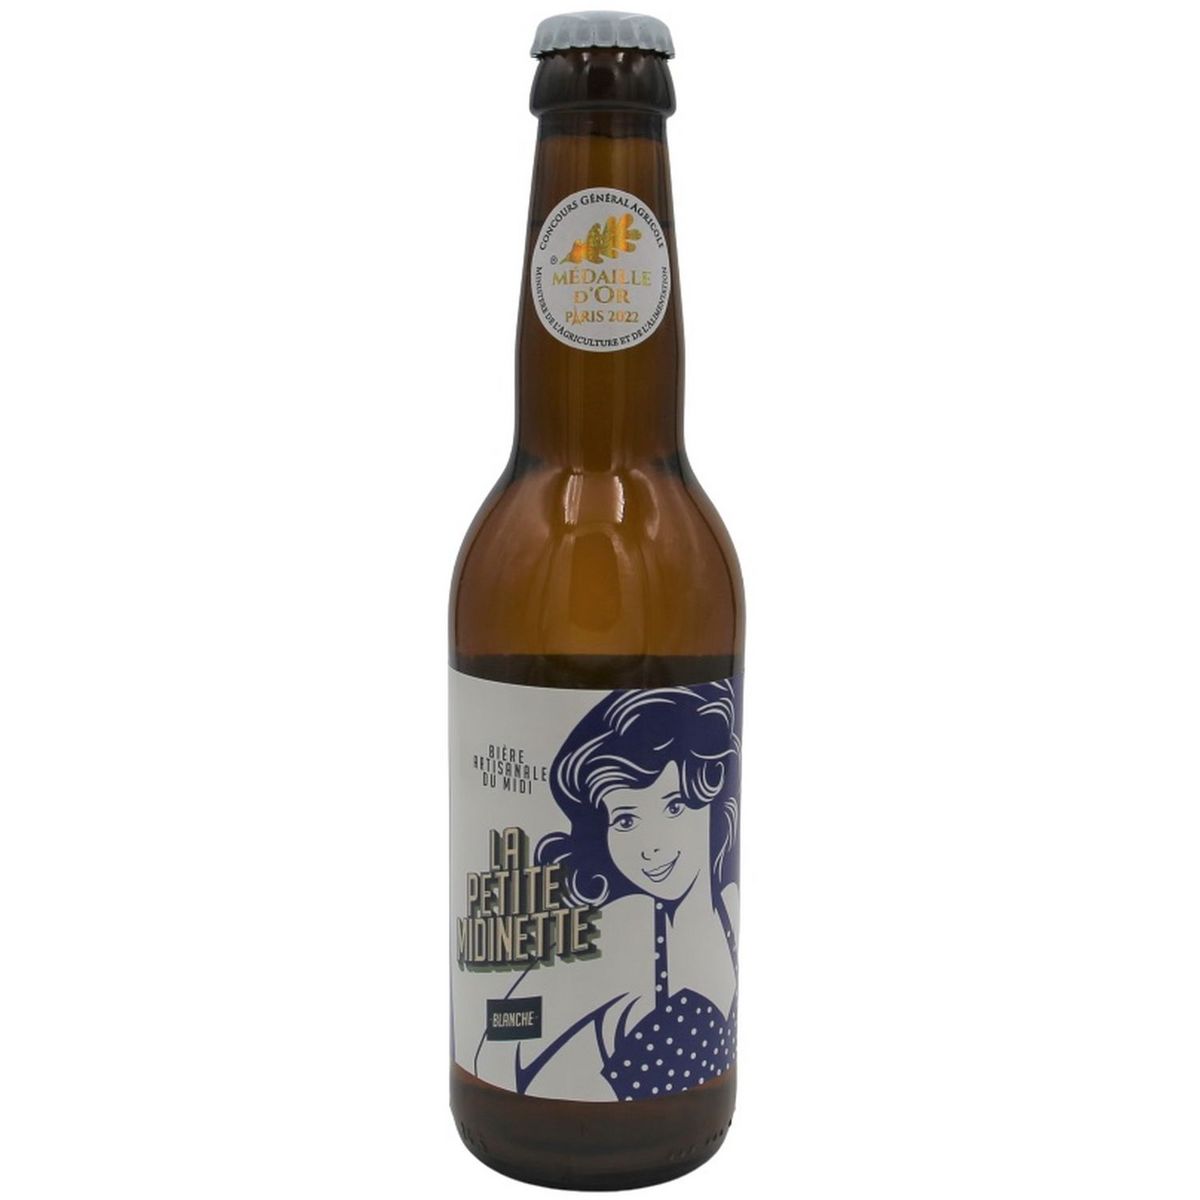 LA PETITE MIDINETTE Bière blanche artisanale 4.5% bouteille 33cl